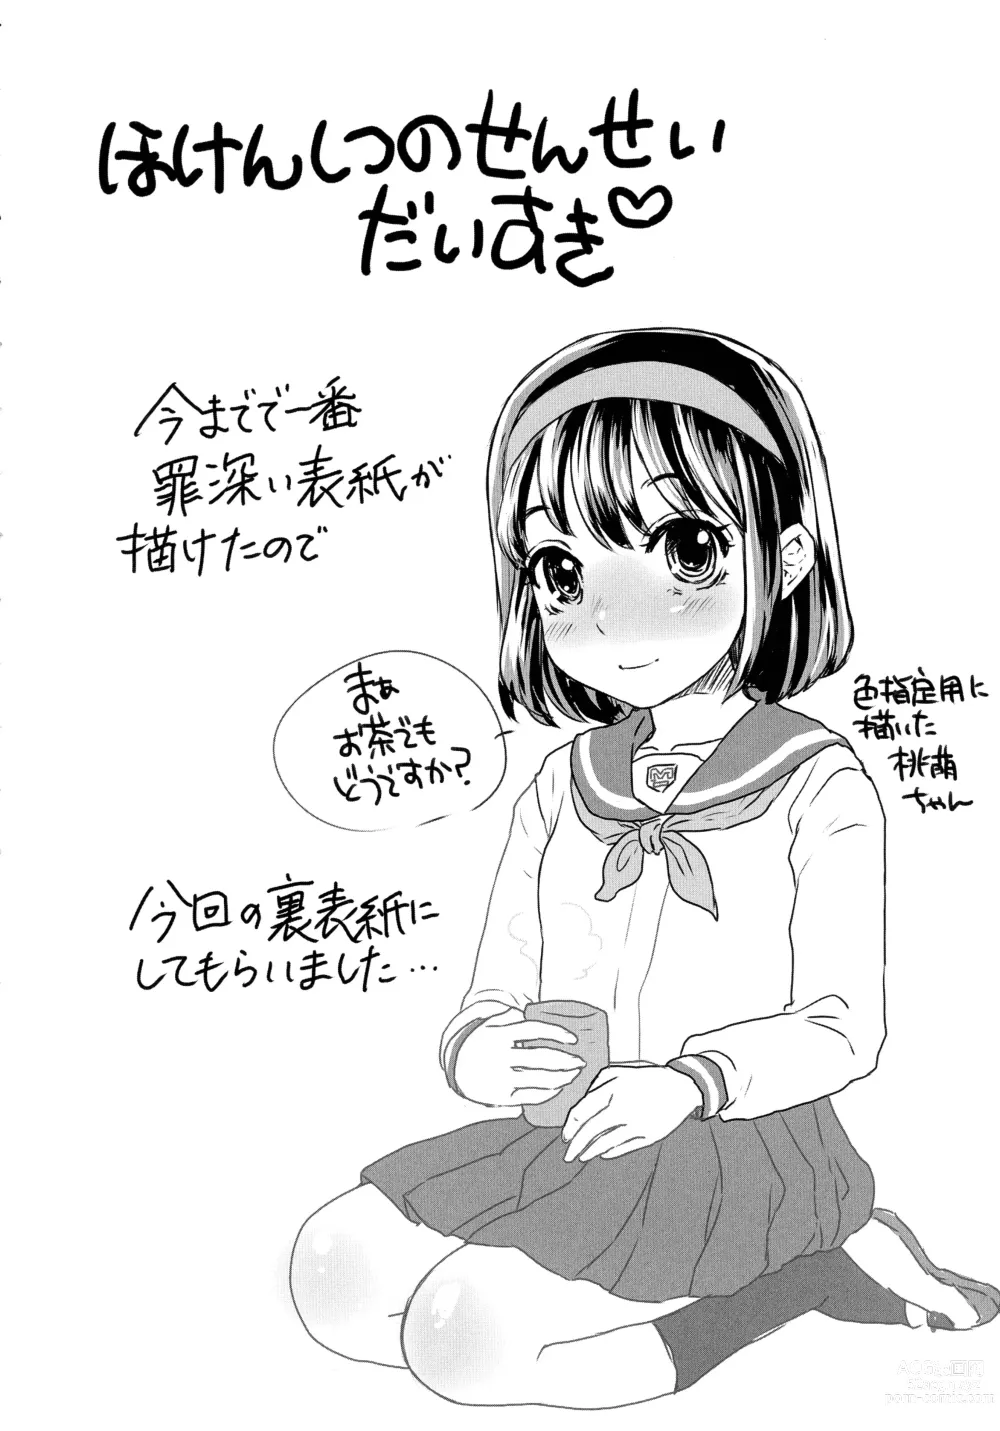 Page 190 of manga Subetega Mesu ni Naru